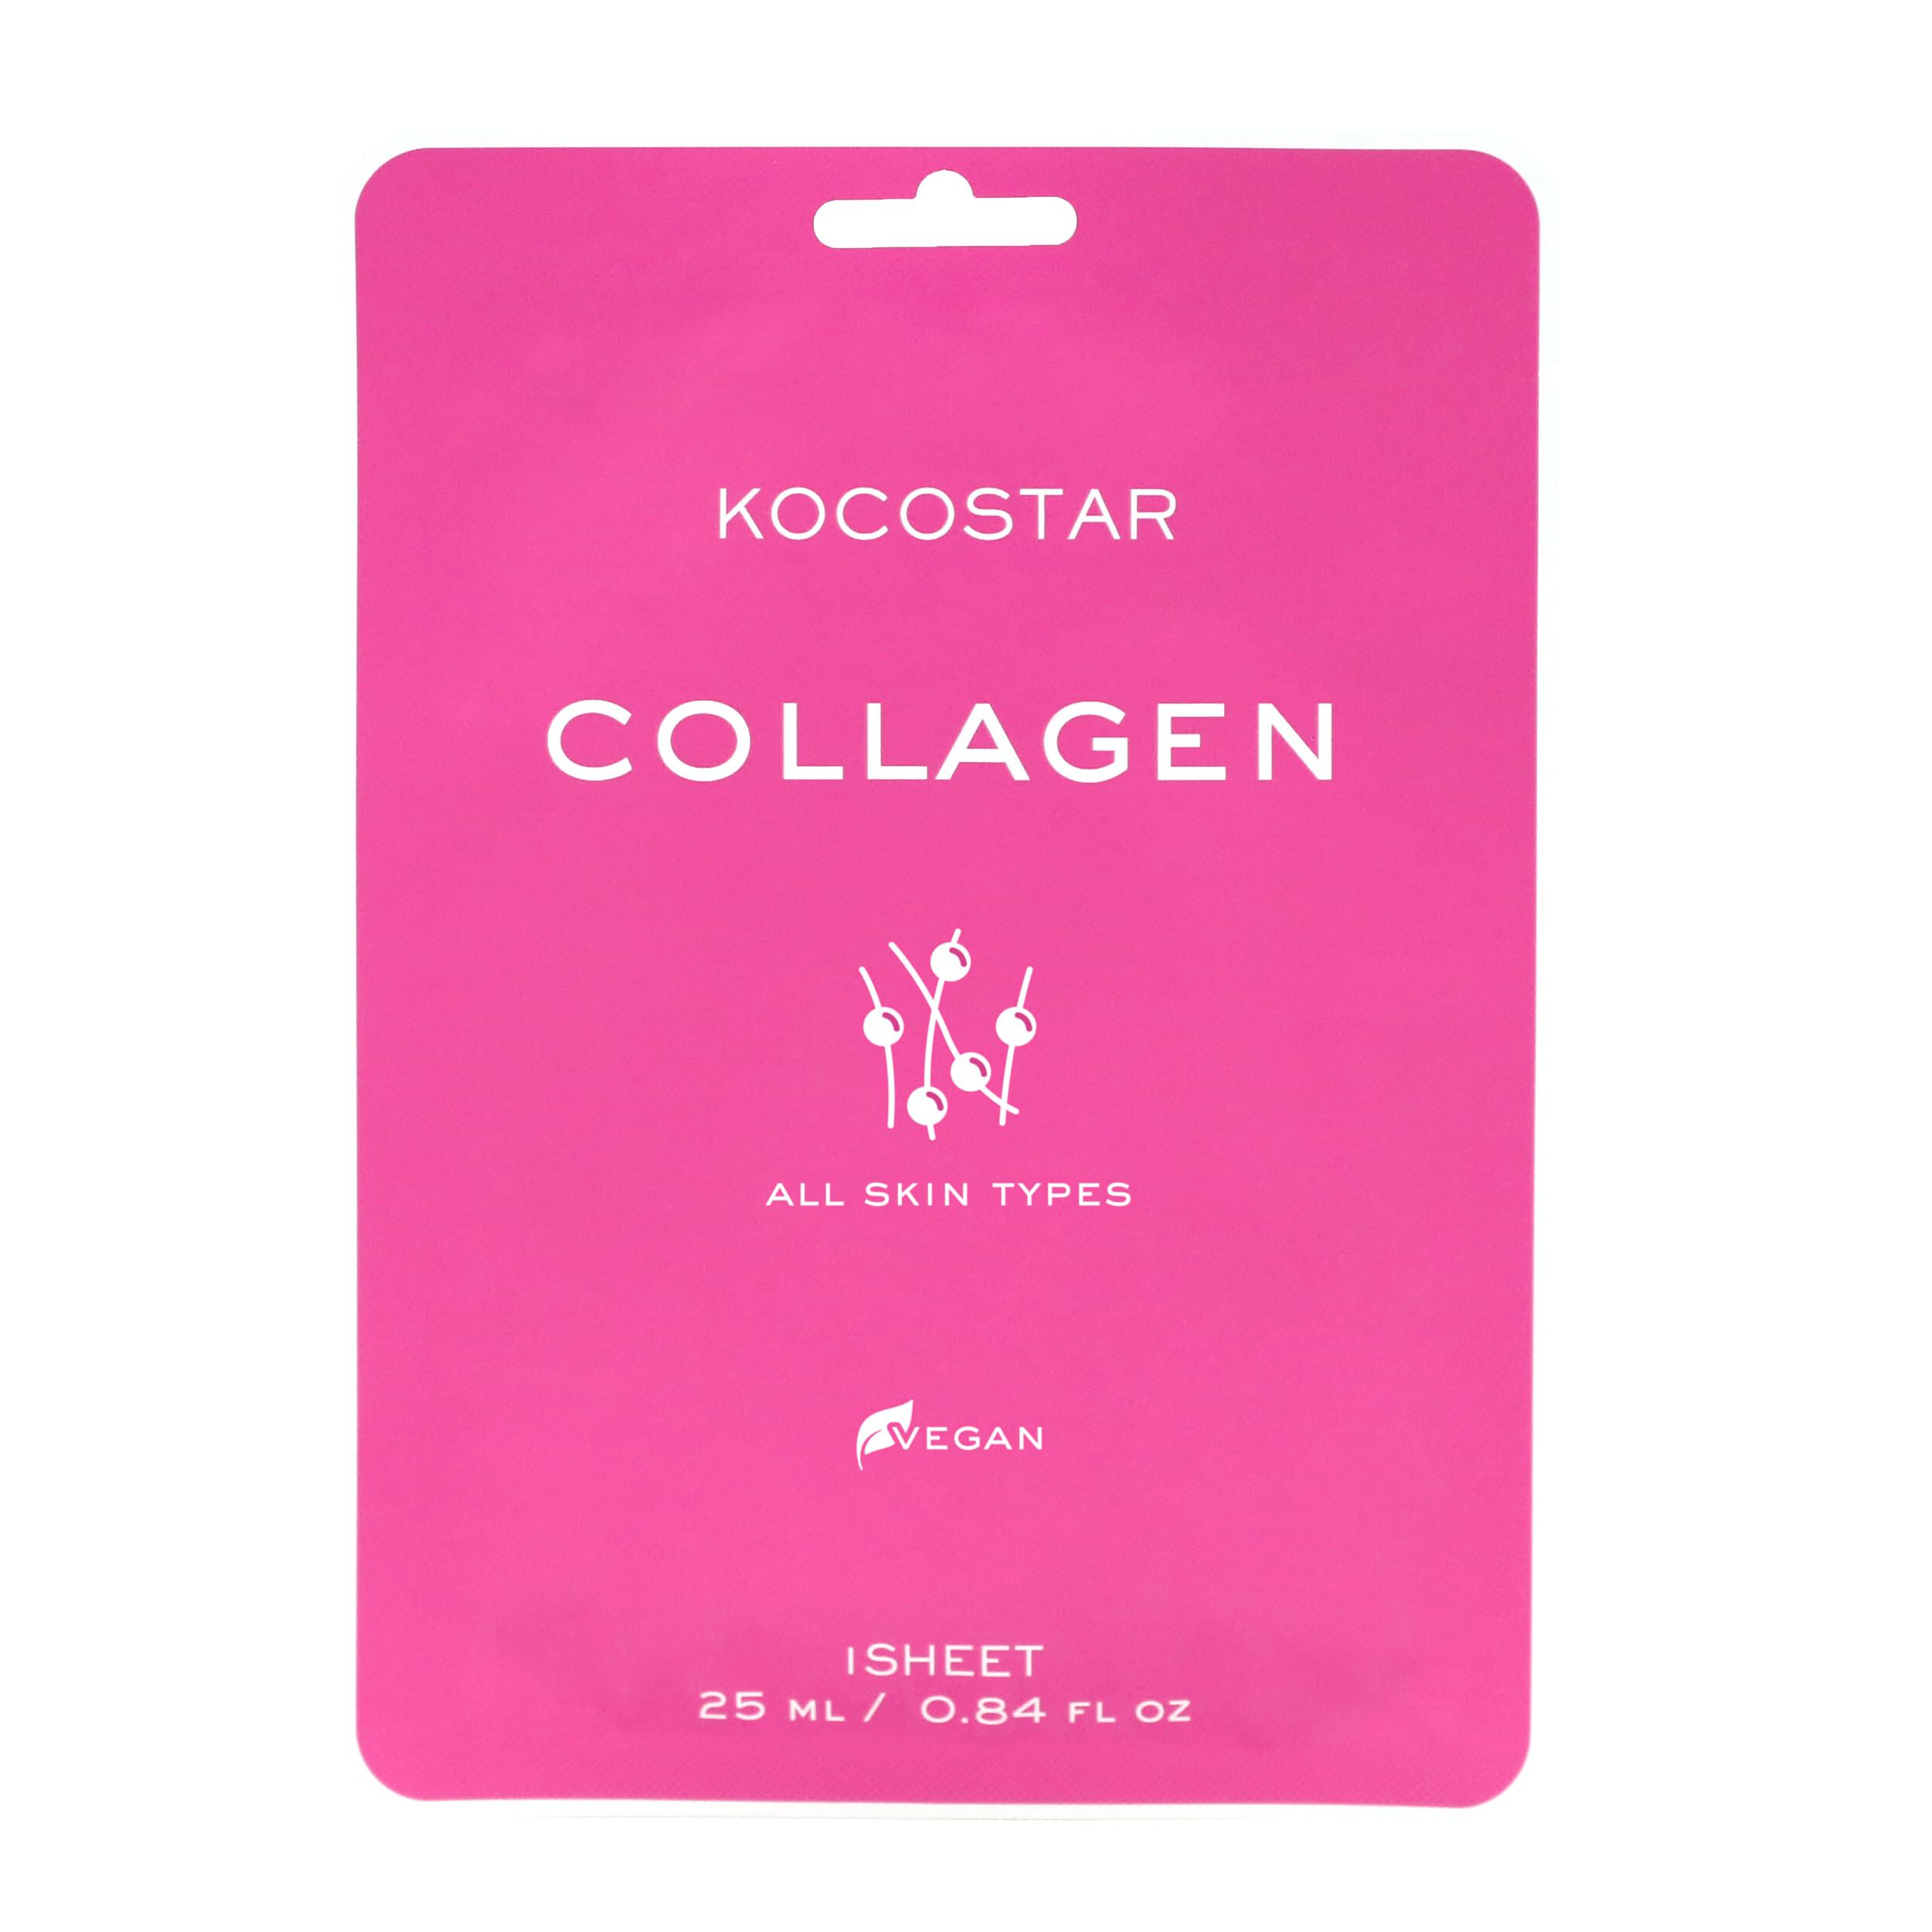 Маска для лица Kocostar Collagen, 25 мл гидрогелевая маска для лица kocostar collagen 1 шт